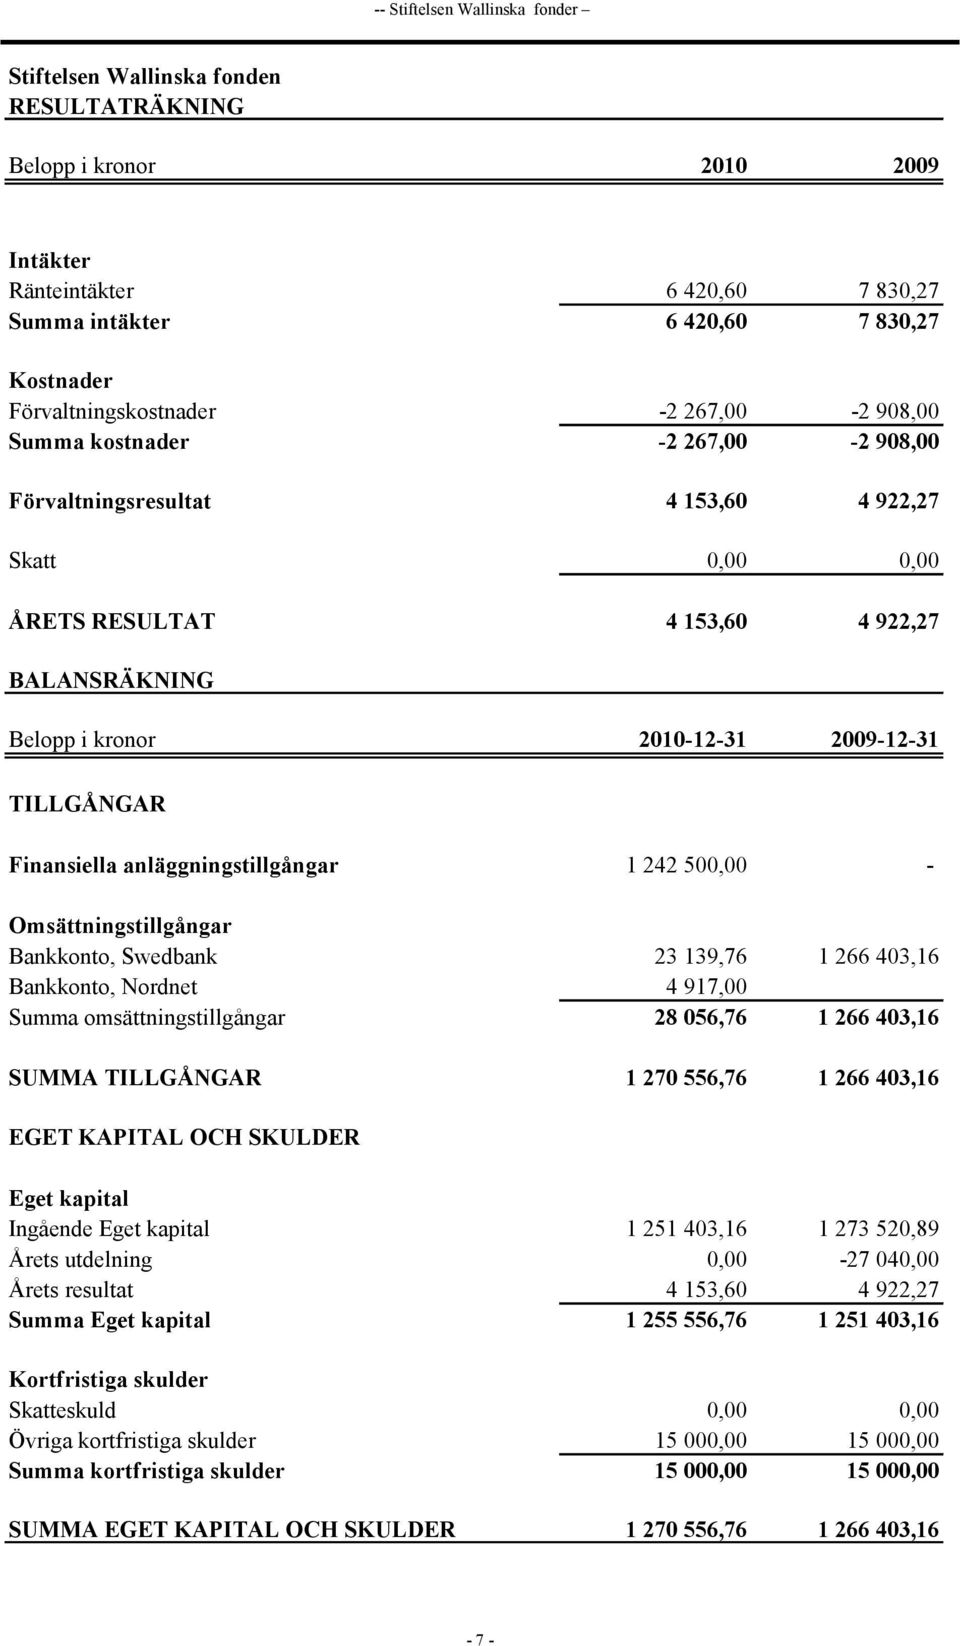 2010-12-31 2009-12-31 TILLGÅNGAR Finansiella anläggningstillgångar 1 242 500,00 - Omsättningstillgångar Bankkonto, Swedbank 23 139,76 1 266 403,16 Bankkonto, Nordnet 4 917,00 Summa